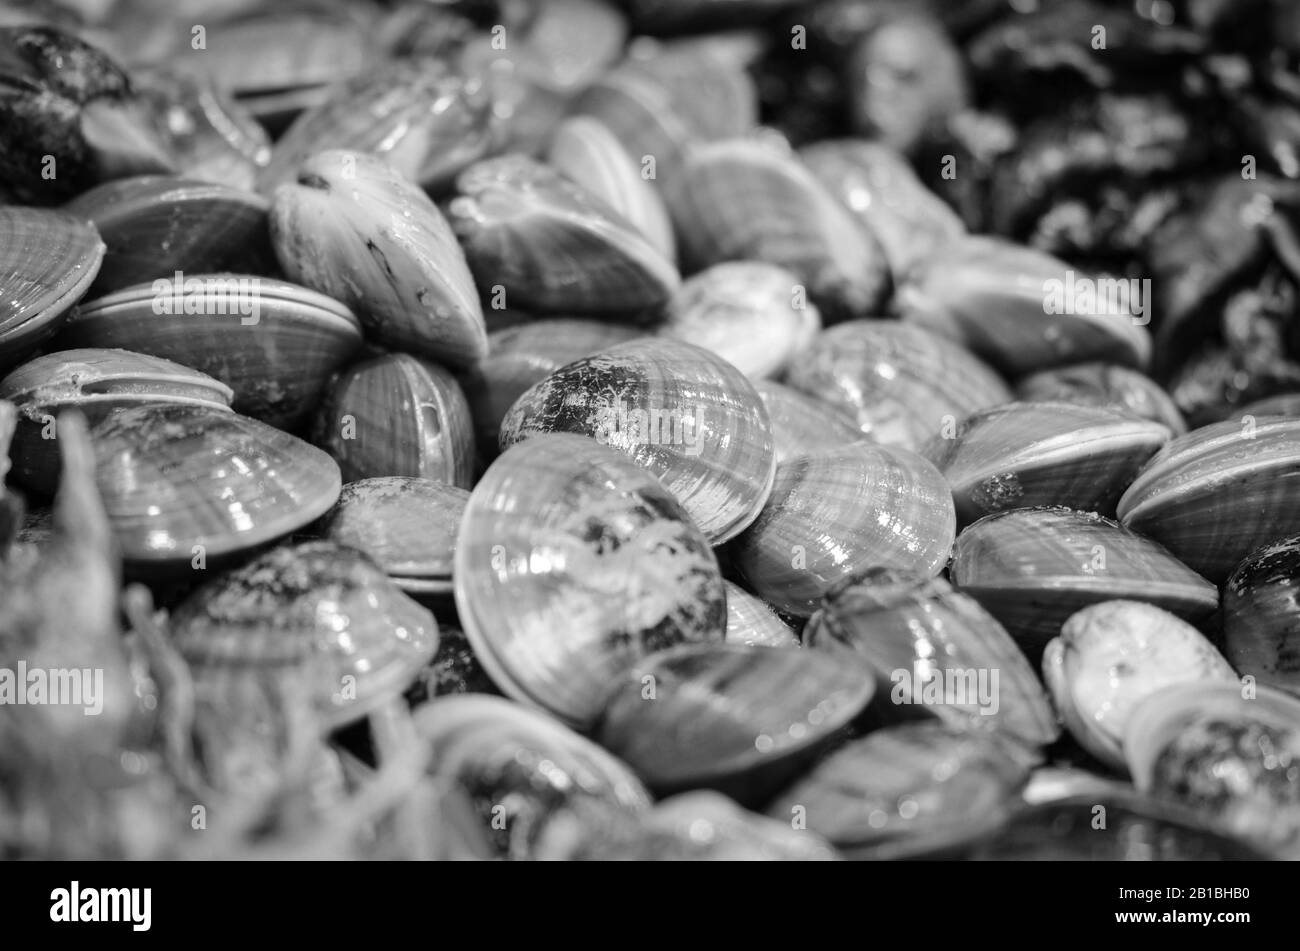 Frische Mischung Meeresfrüchte innerhalb des Fischmarktes - Krake, Muscheln, Austern, Garnelen, Calamari, Fisch Stockfoto